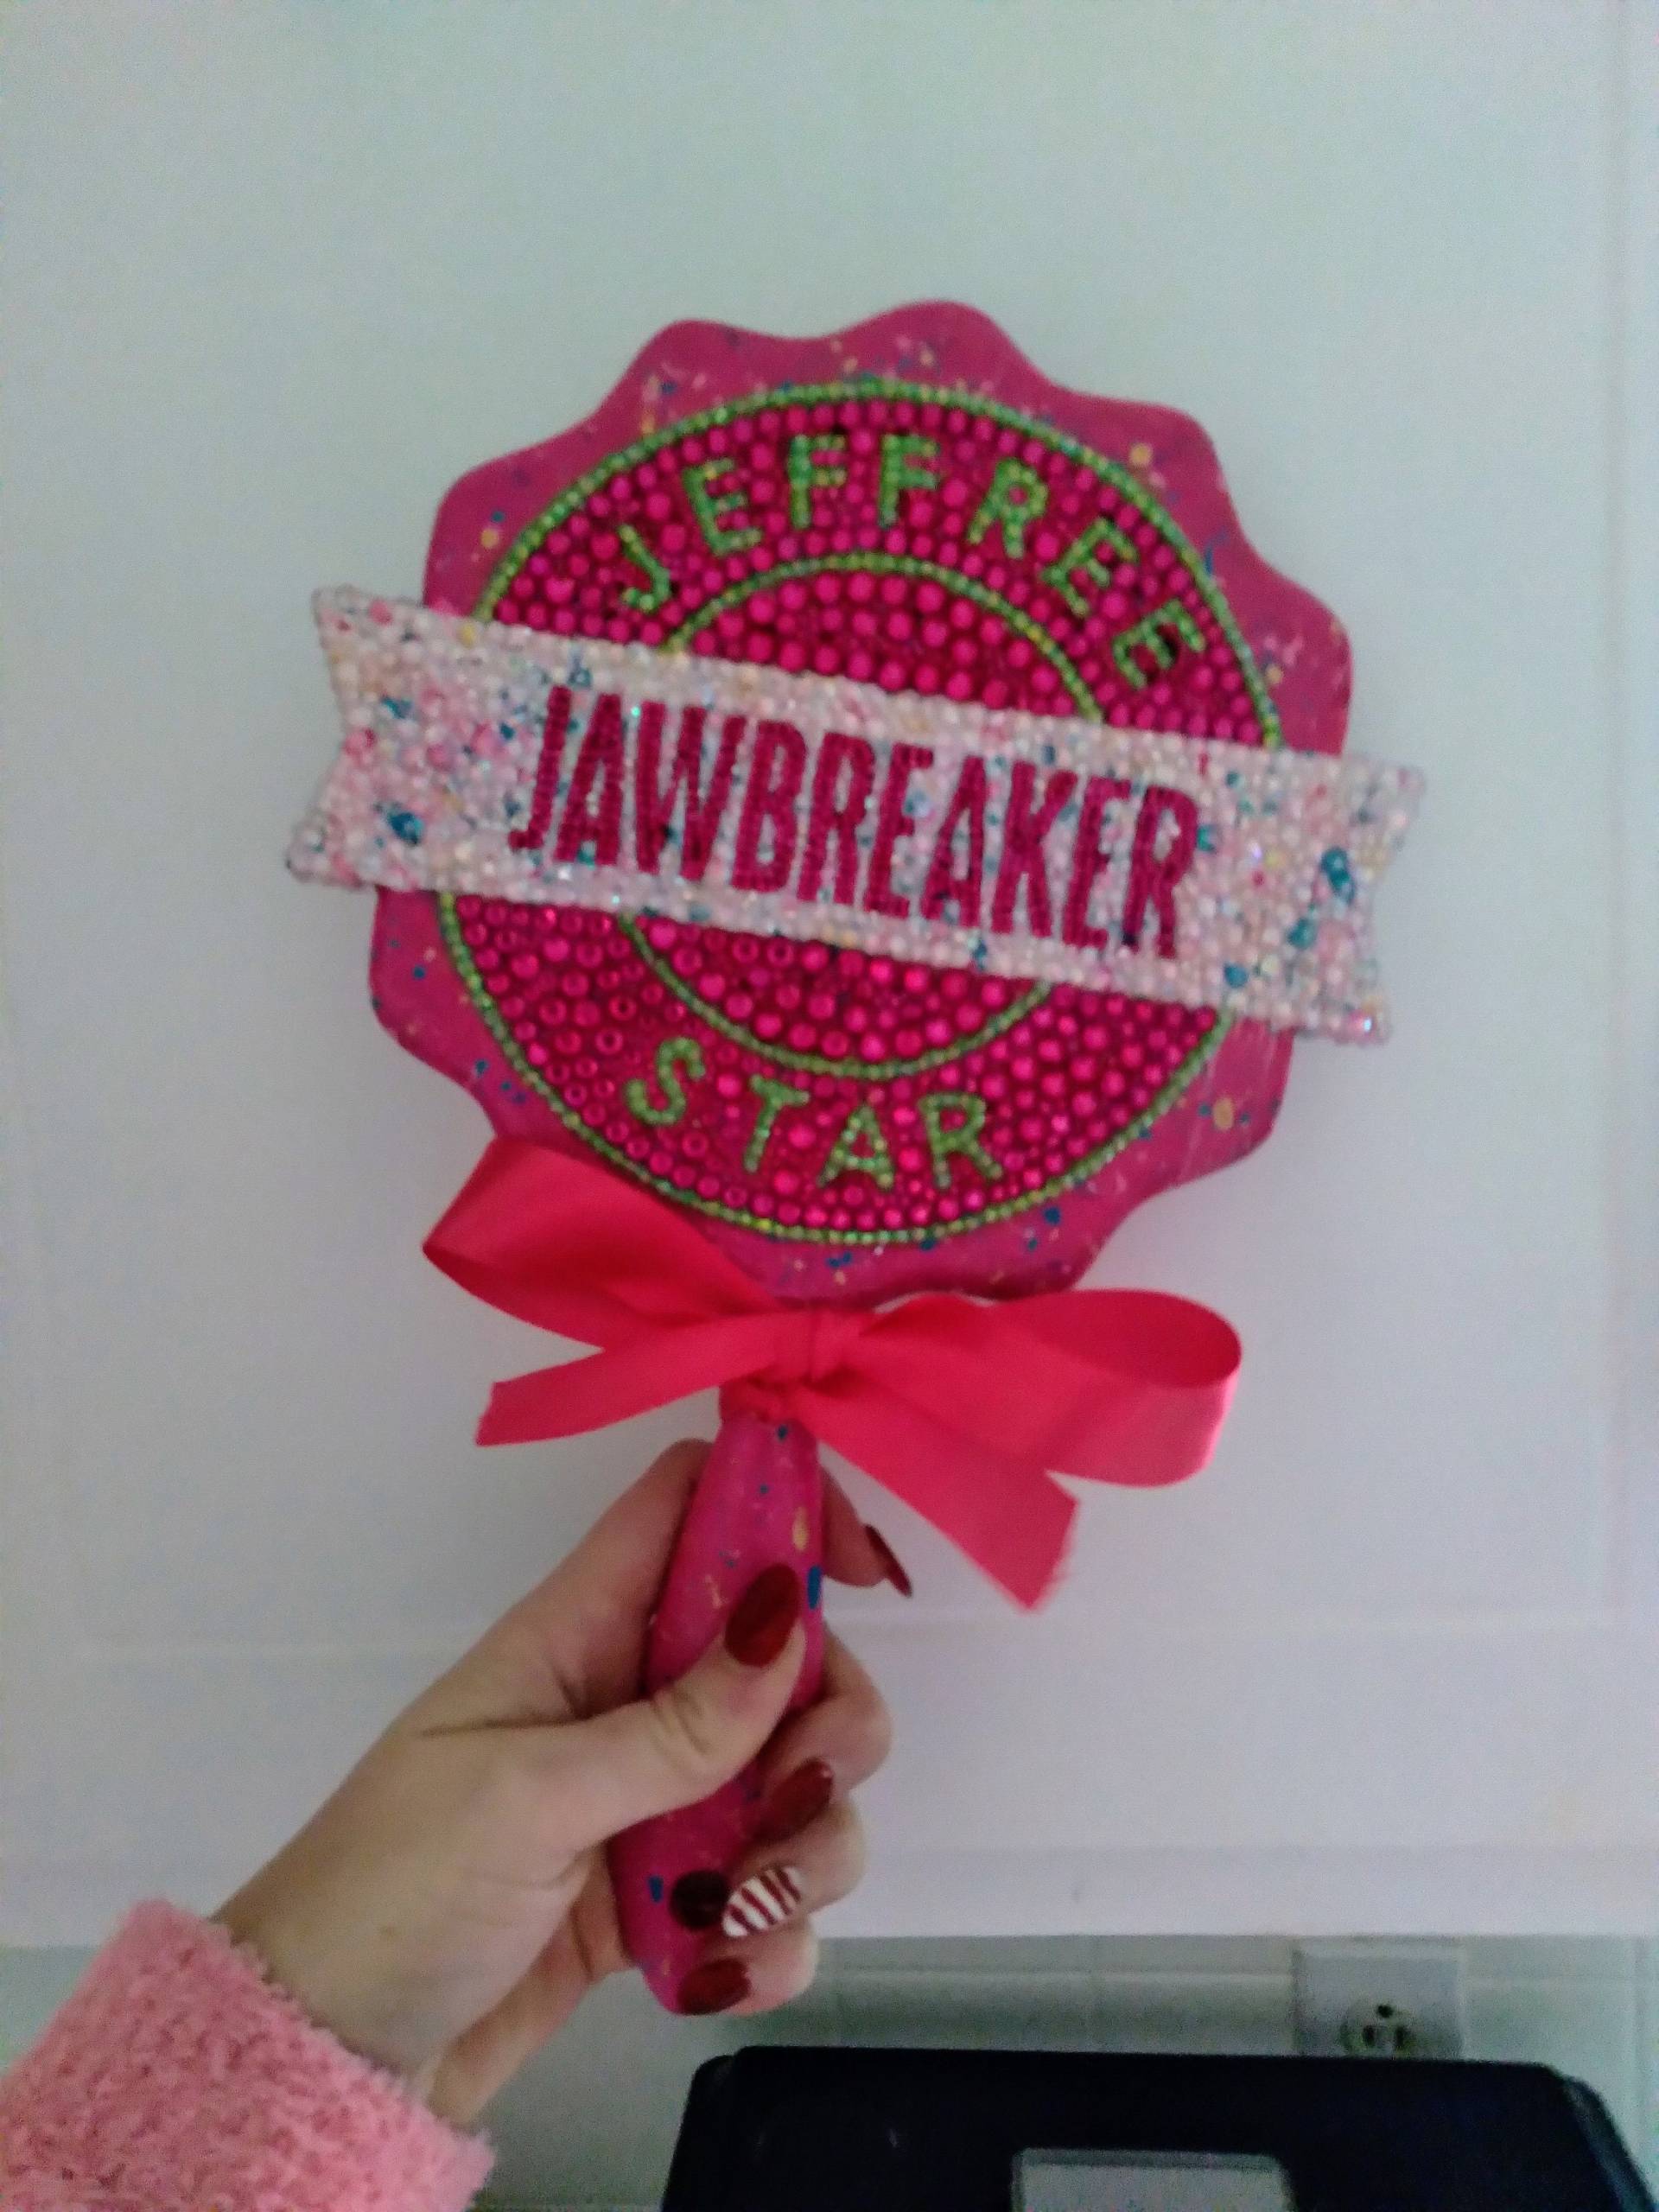 Jawbreaker Inspirierter Spiegel von Etsy - Blingbabe101